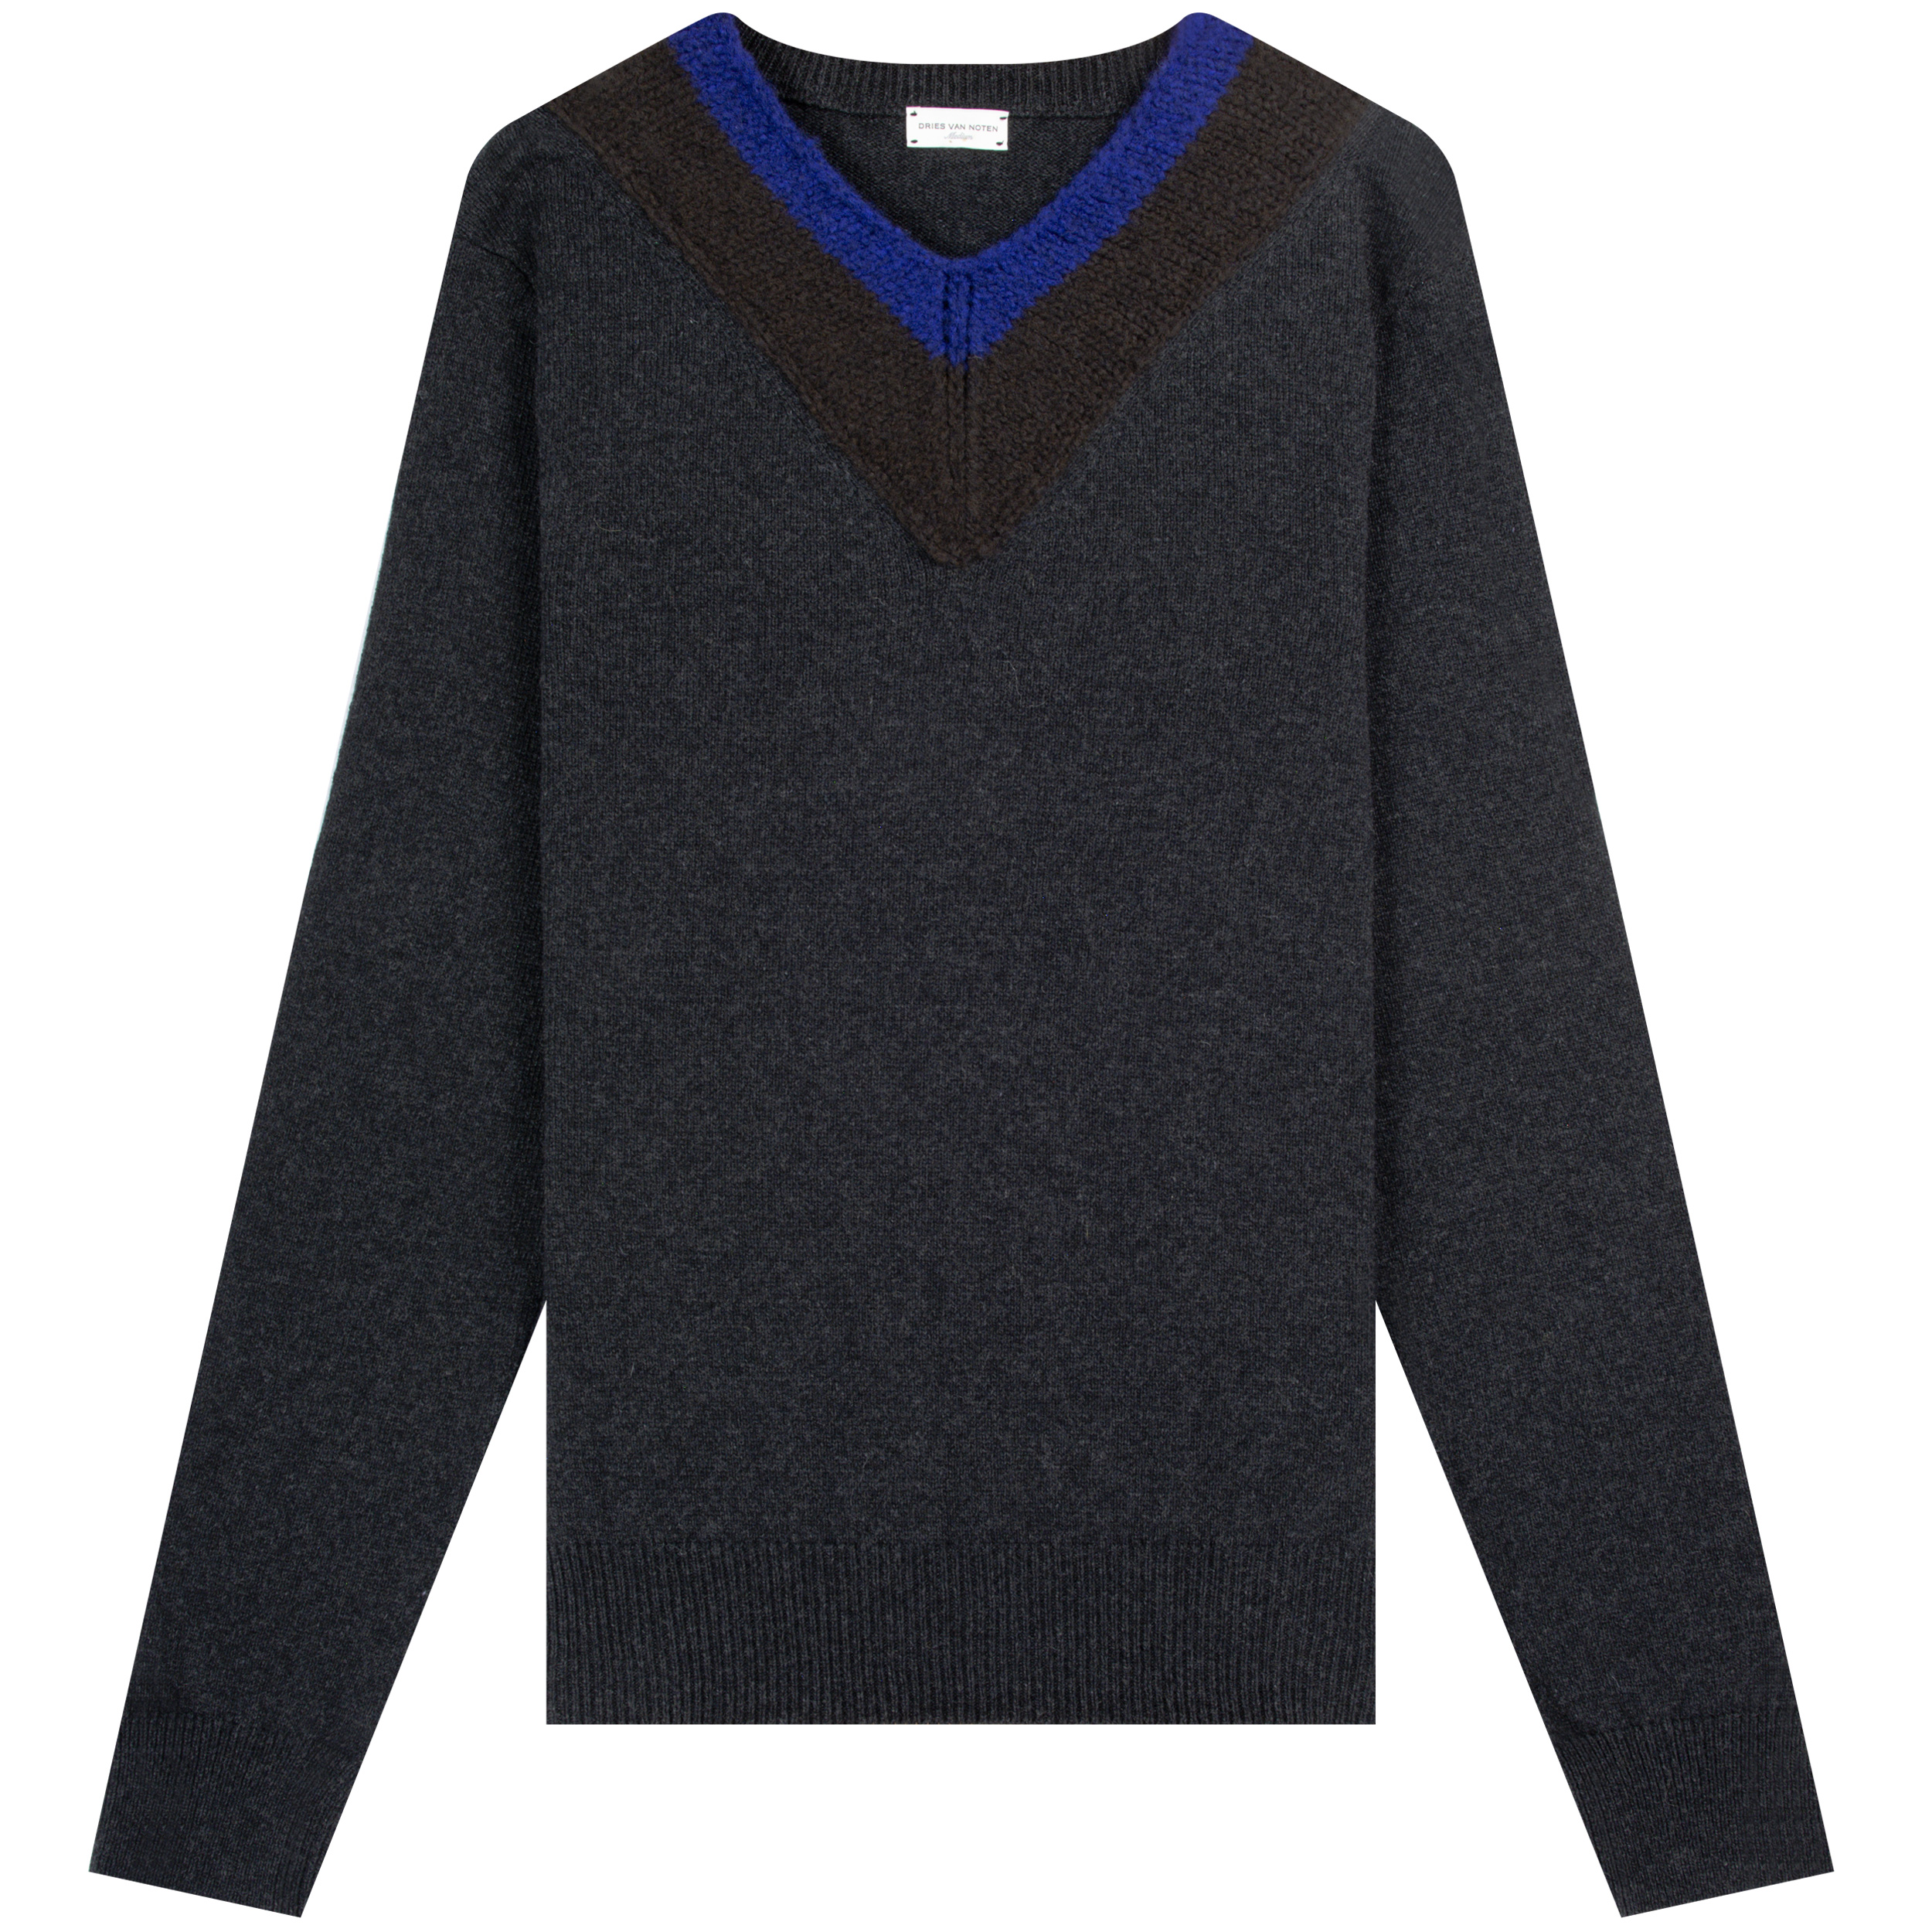 Dries Van Noten ’Knitted Detail’ V-Neck Blue/Brown/Dark Grey